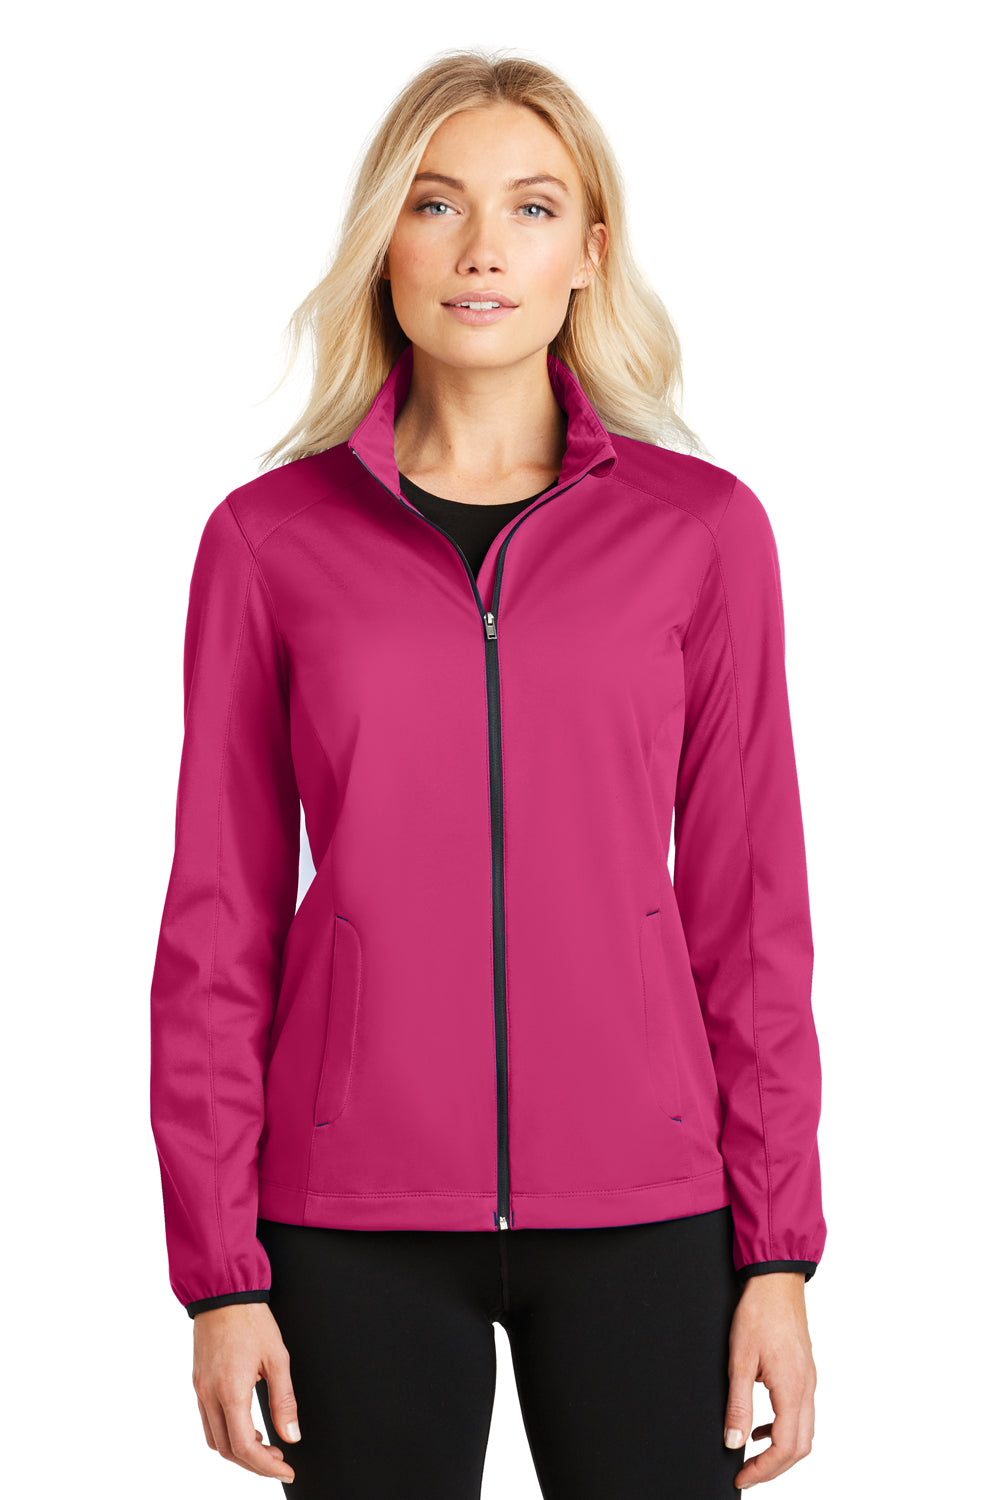 Port Authority L717 Womens Active Wind & Water Resistant Full Zip Jacket Azalea Pink Front